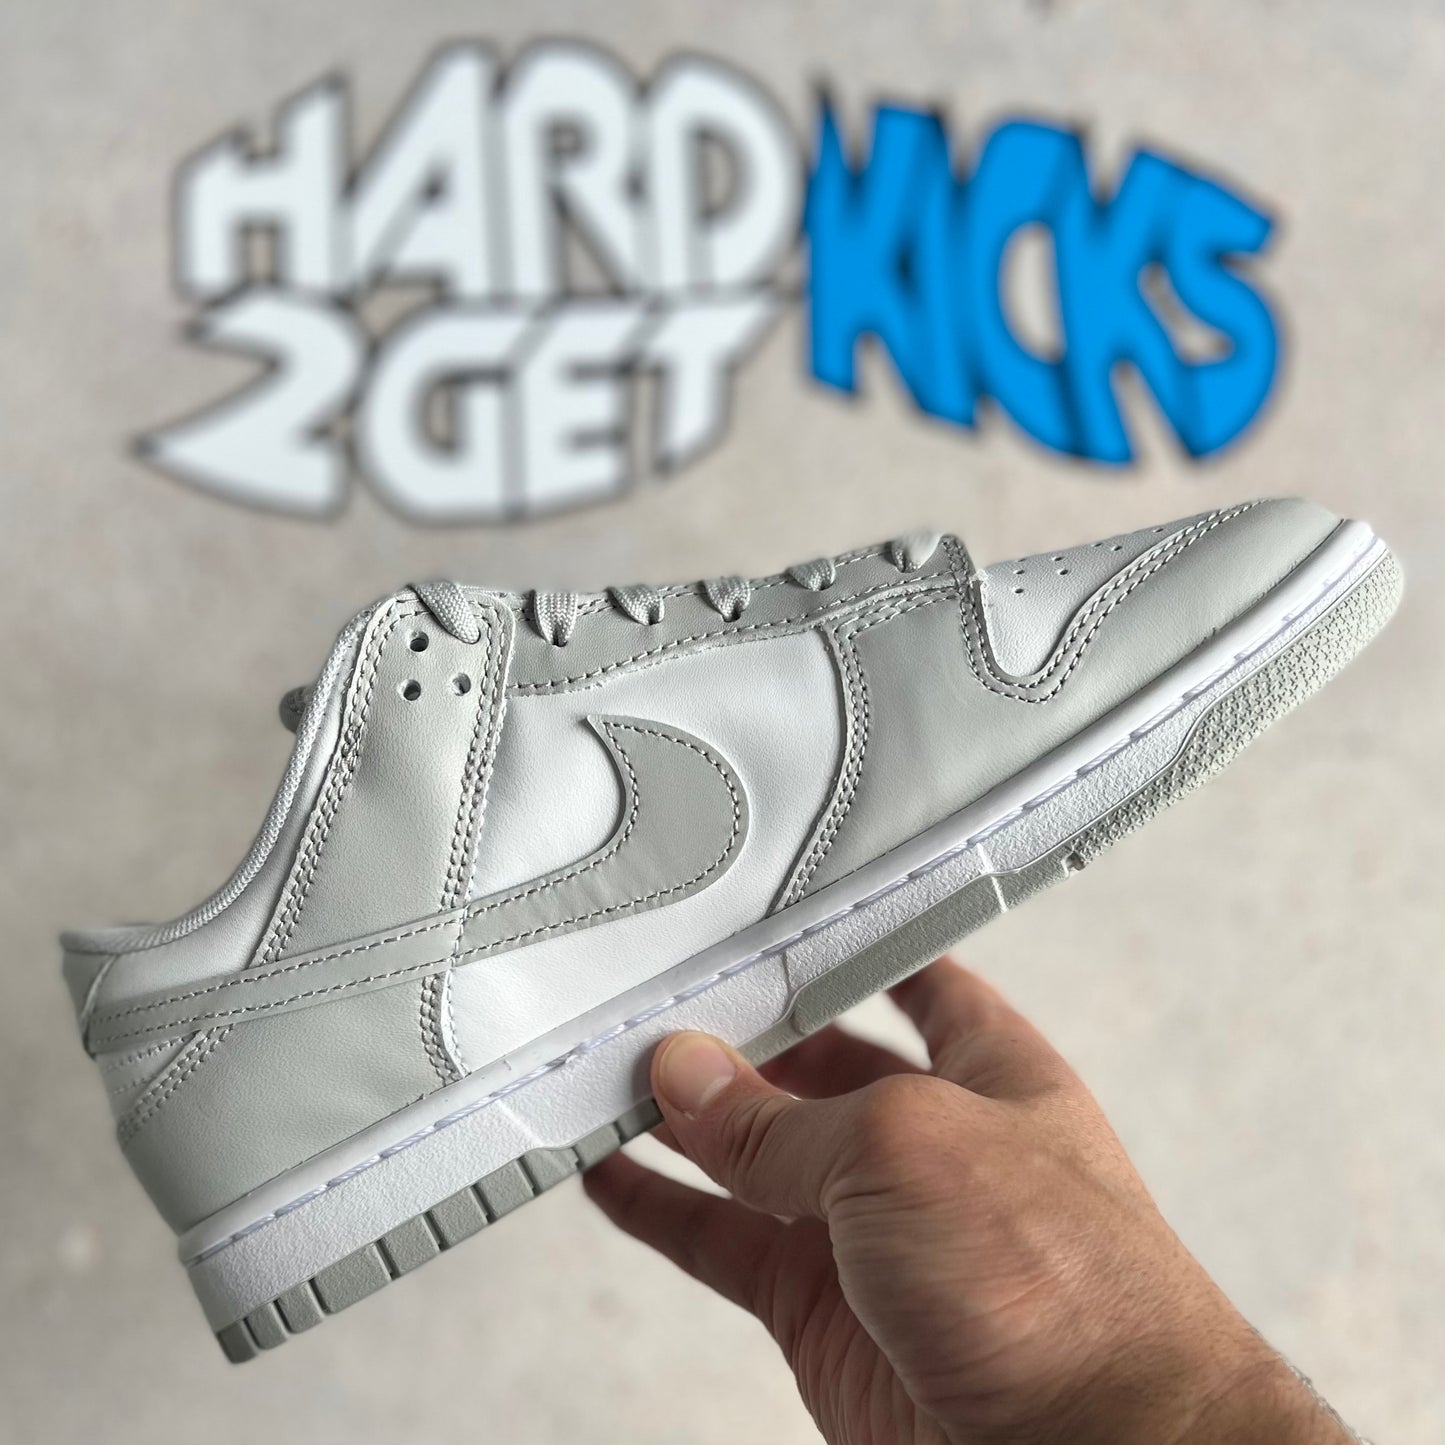 Nike Dunk Low Retro - Grey Fog